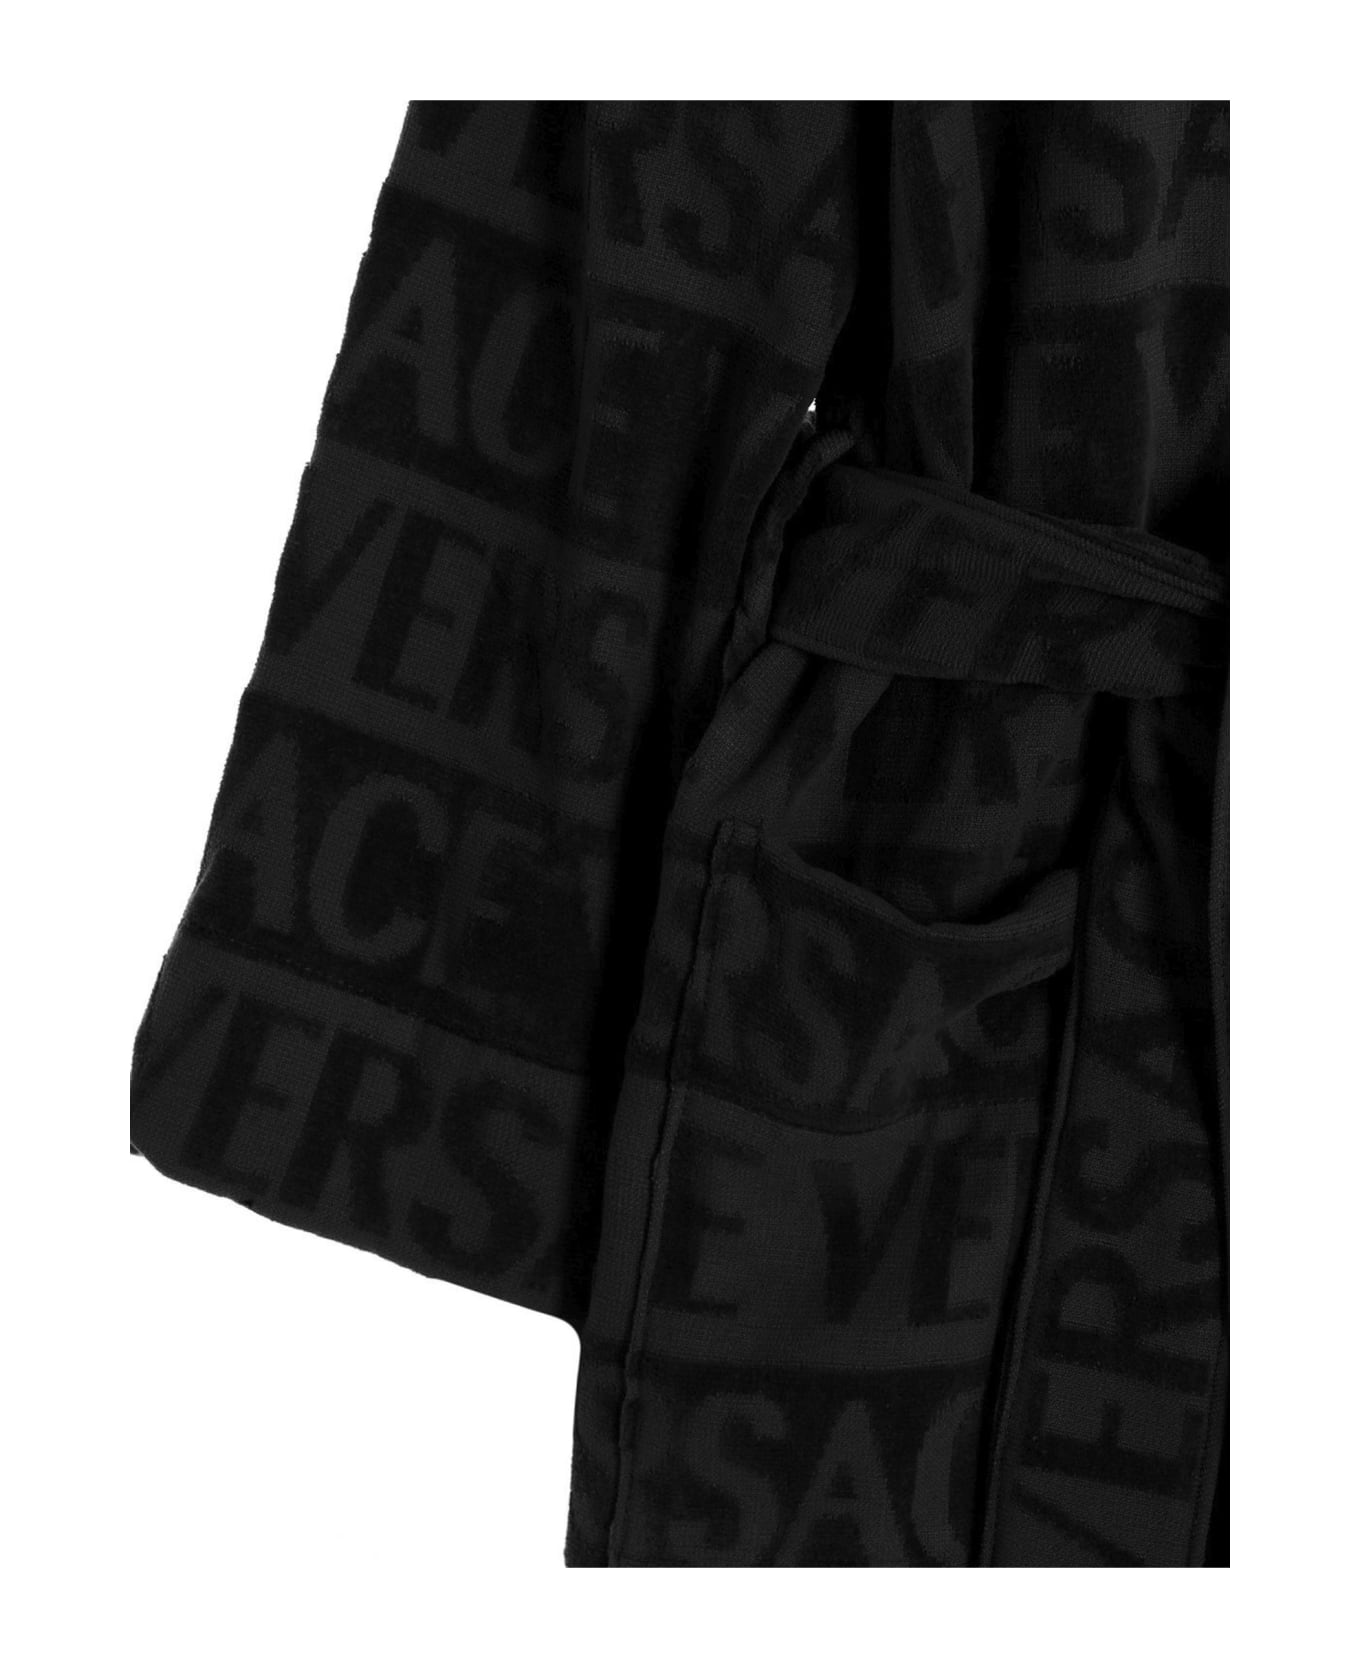 Versace Sequin Logo Bathrobe - Black  